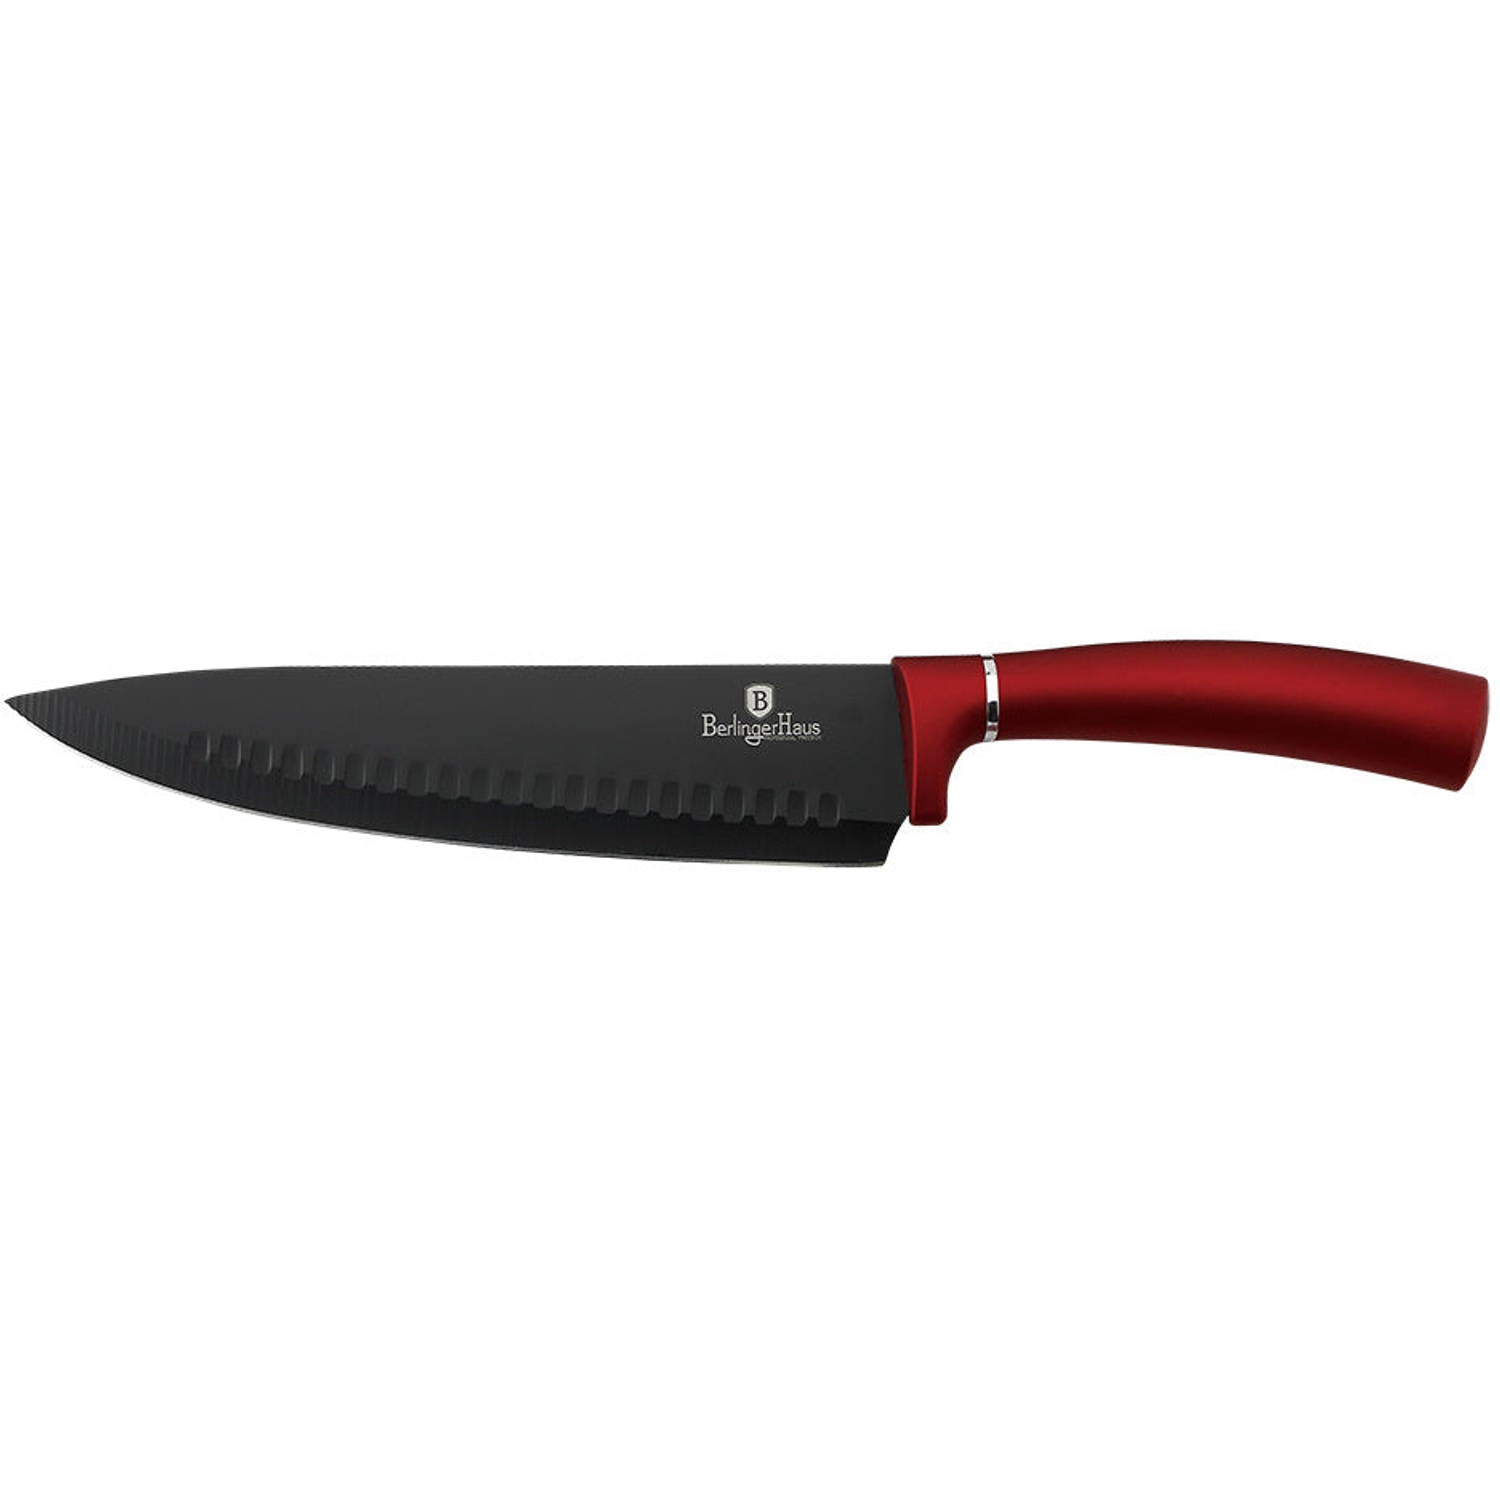 Chef Knife - Burgundy Color